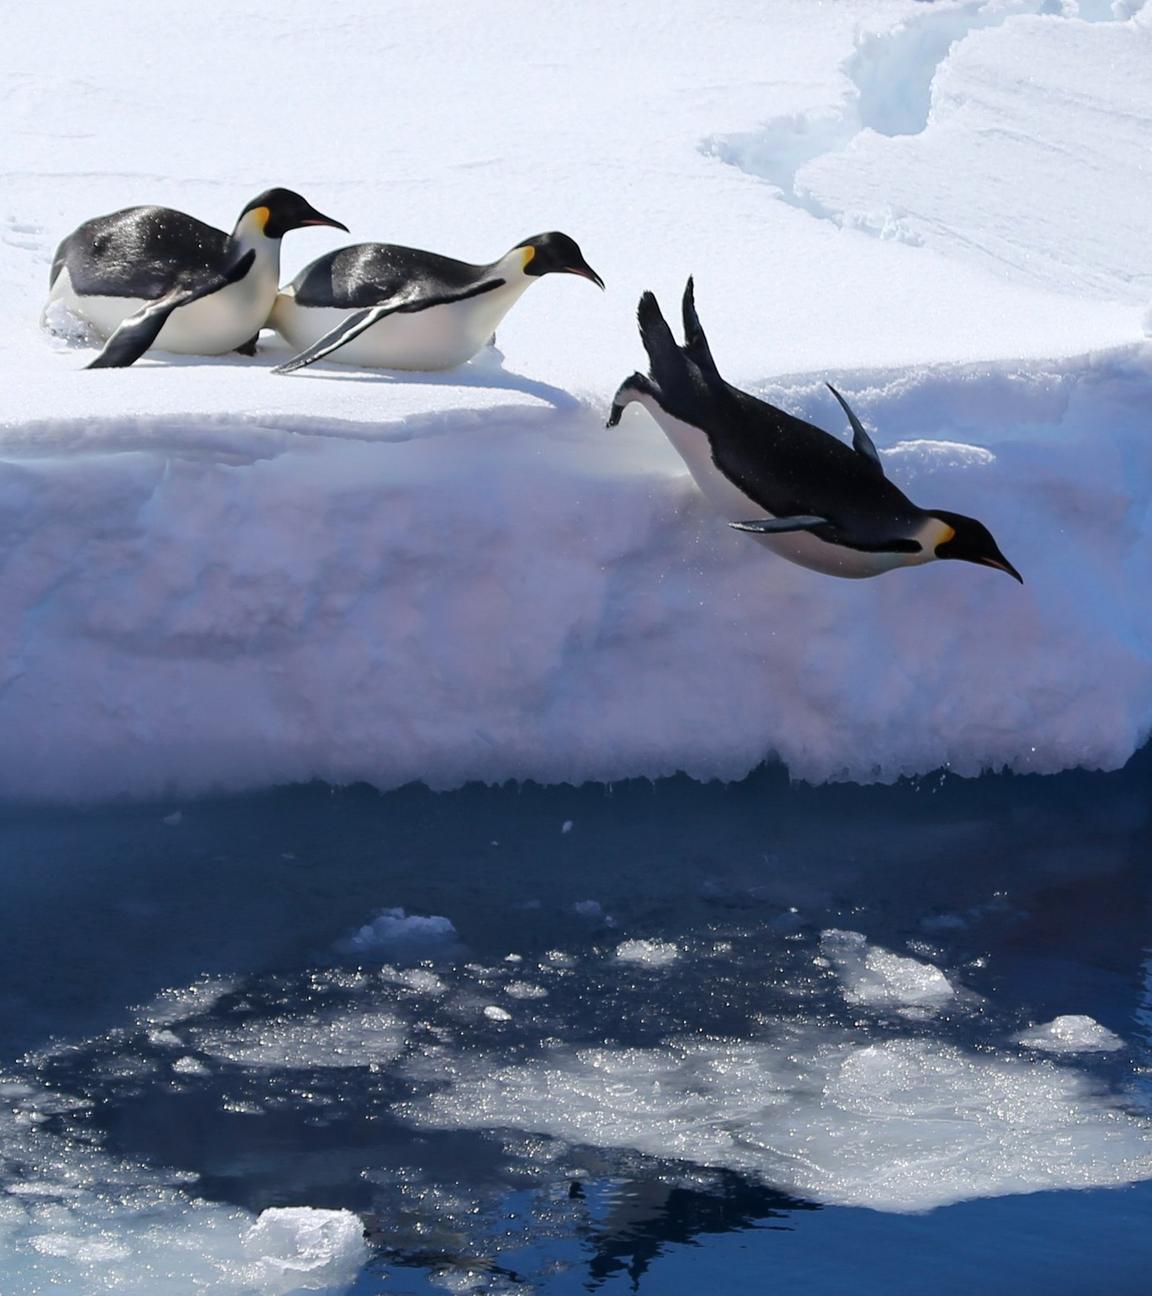 Antarktis, Prydz Bay: Kaiserpinguine springen von einer Eiskante ins Meer.